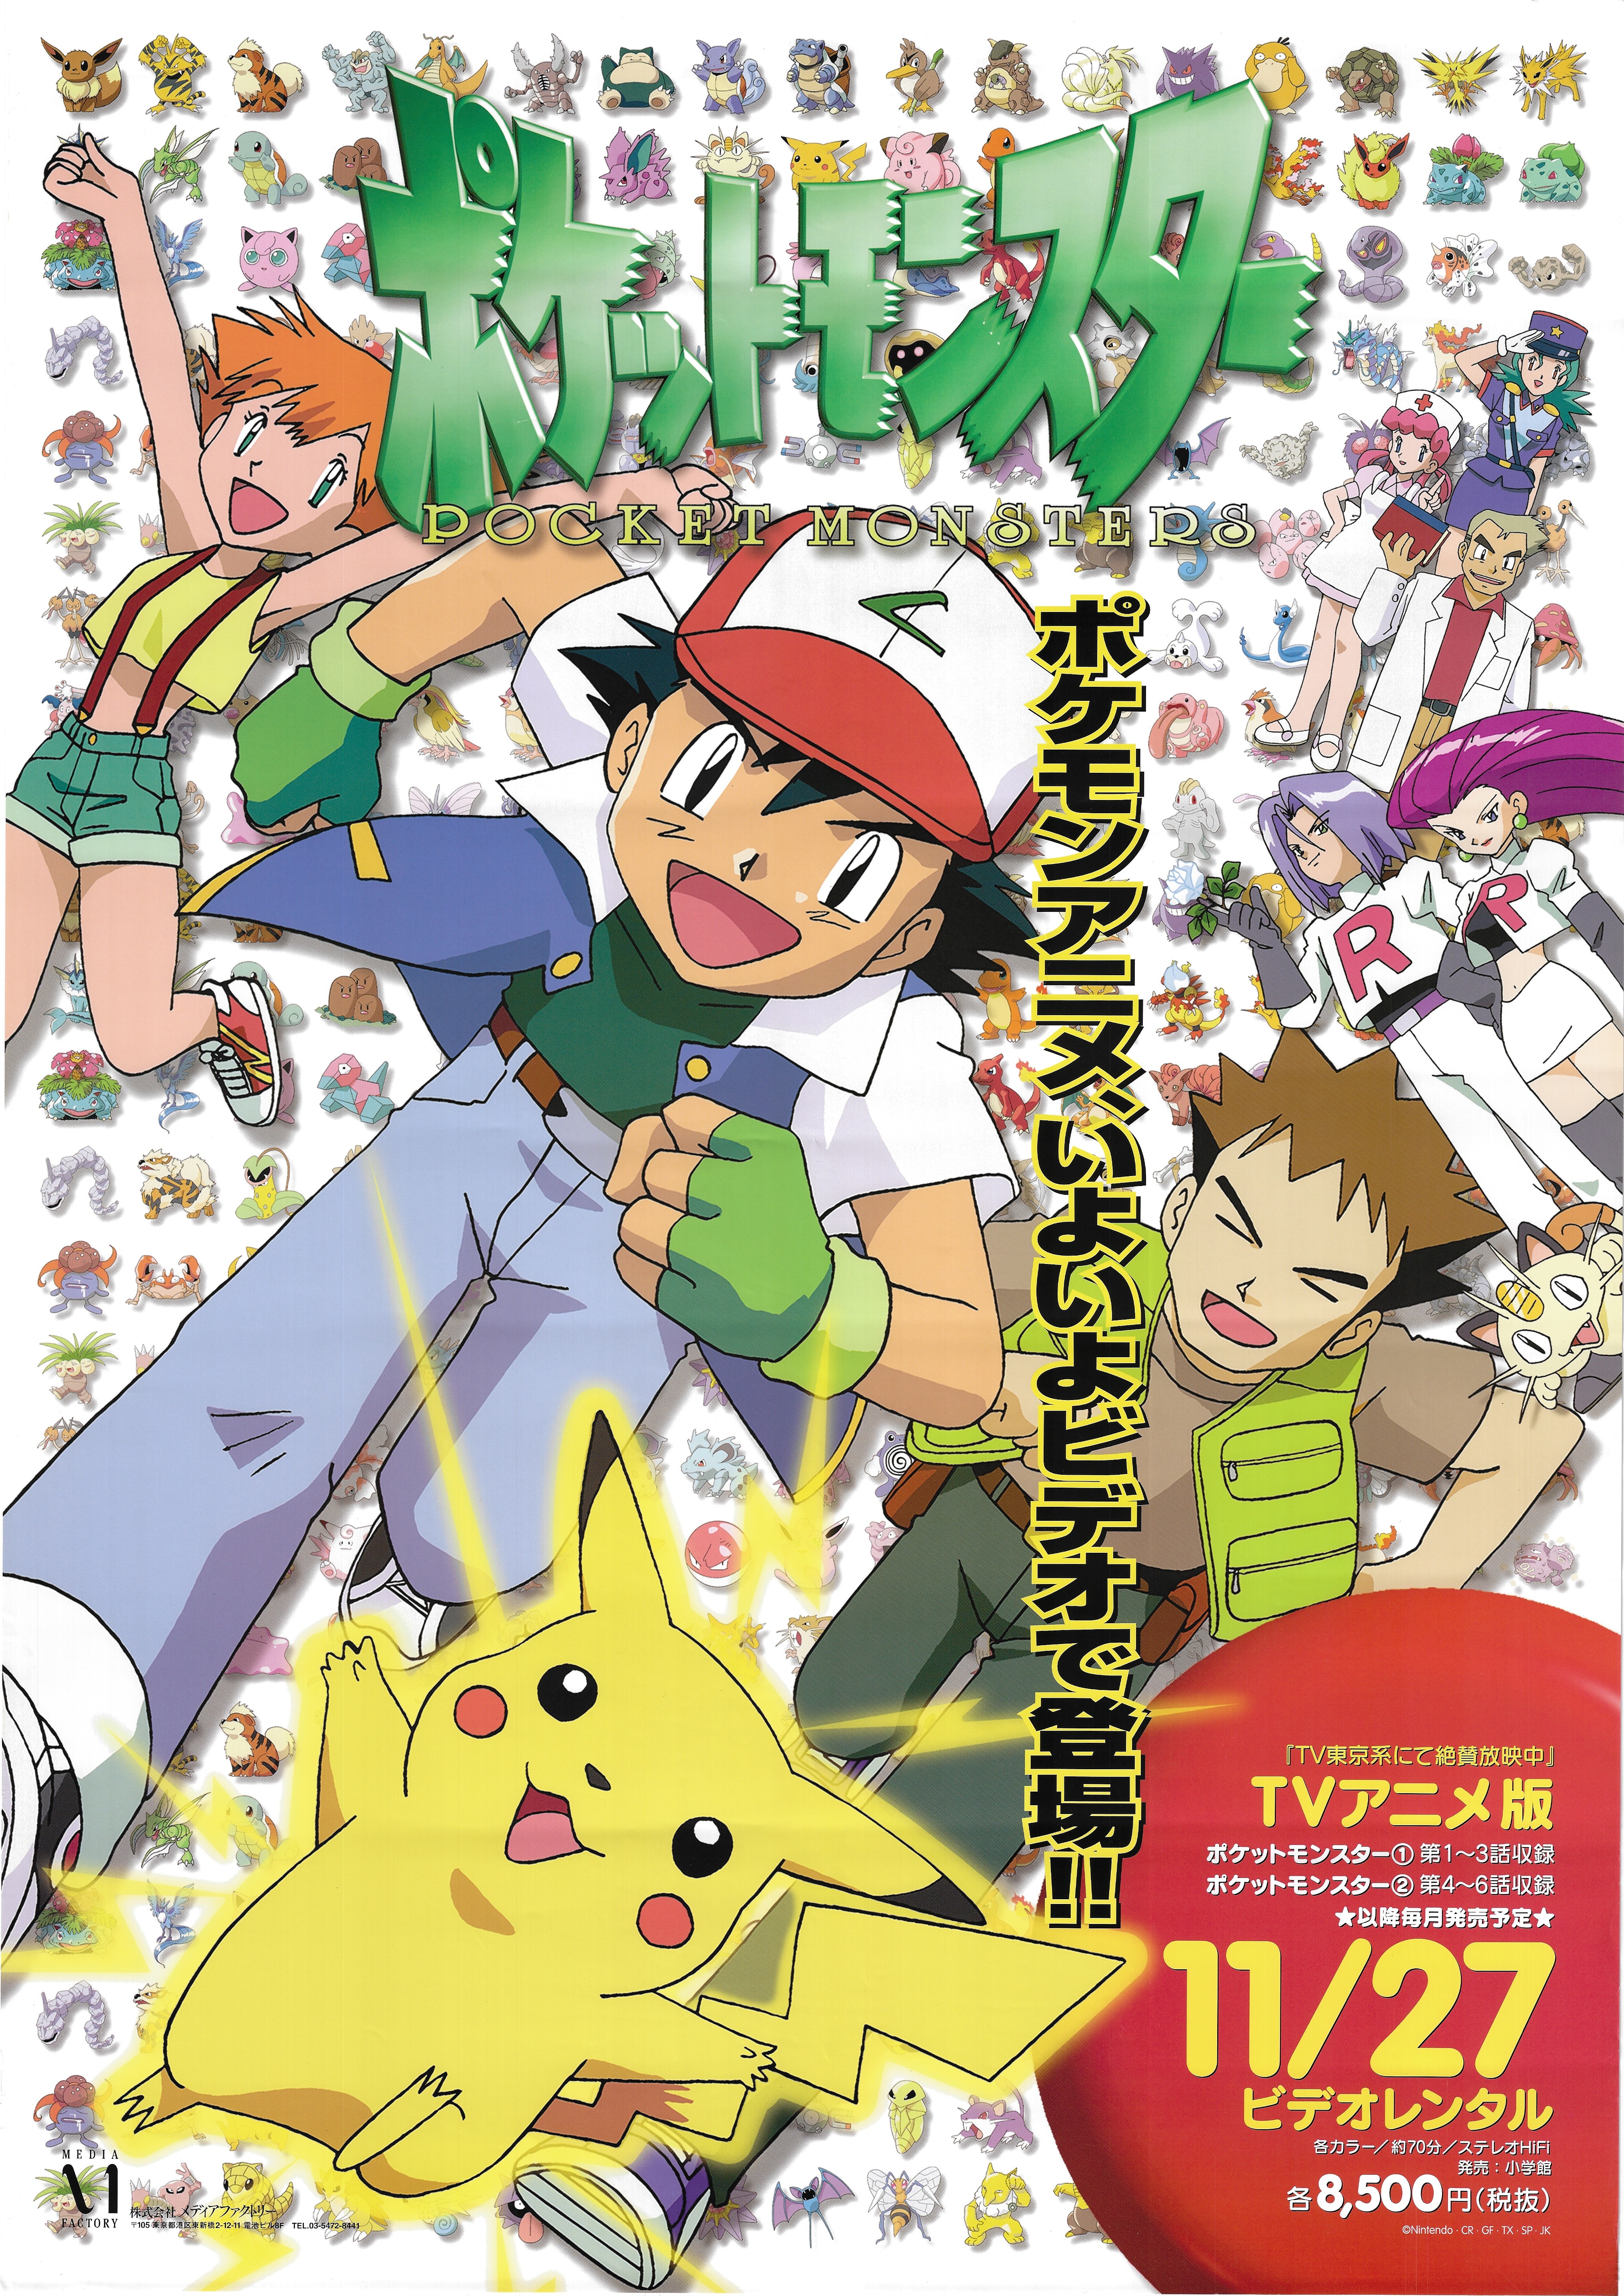 Media Factory Promotional For Pokemon B2 Poster Mandarake Online Shop